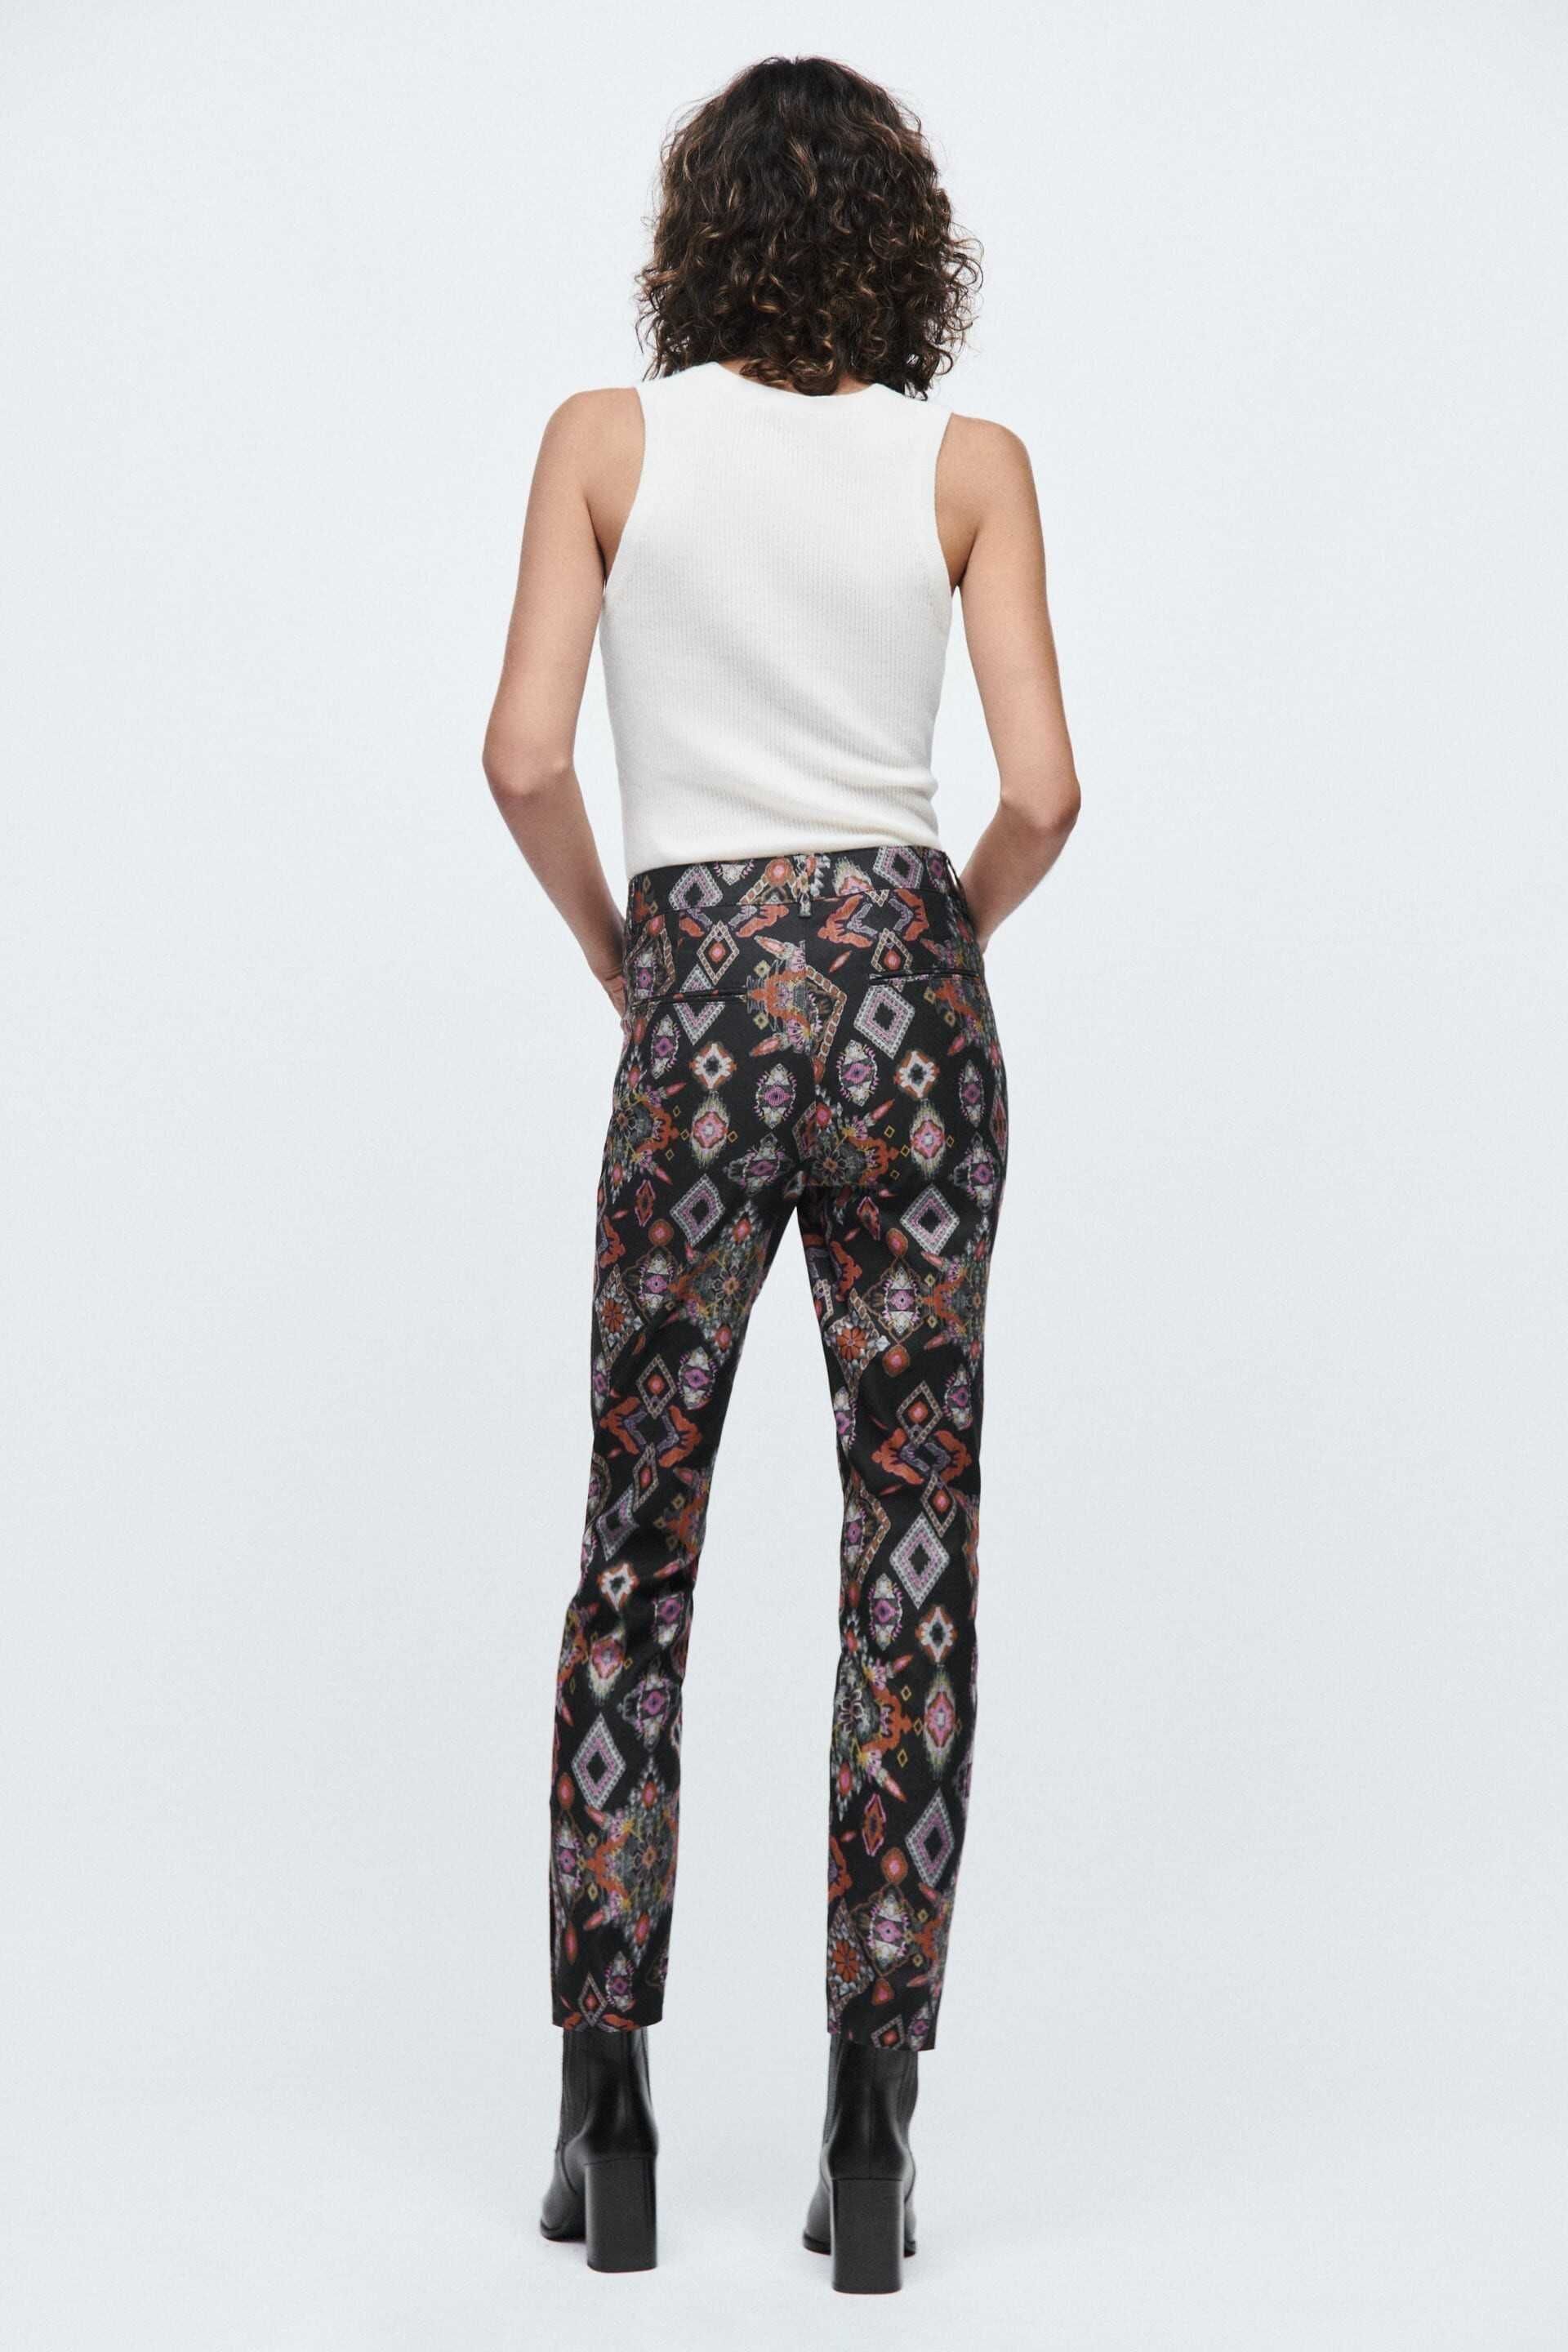 Дамски щампован панталон с висока талия Zara, Slim-Fit, XXL